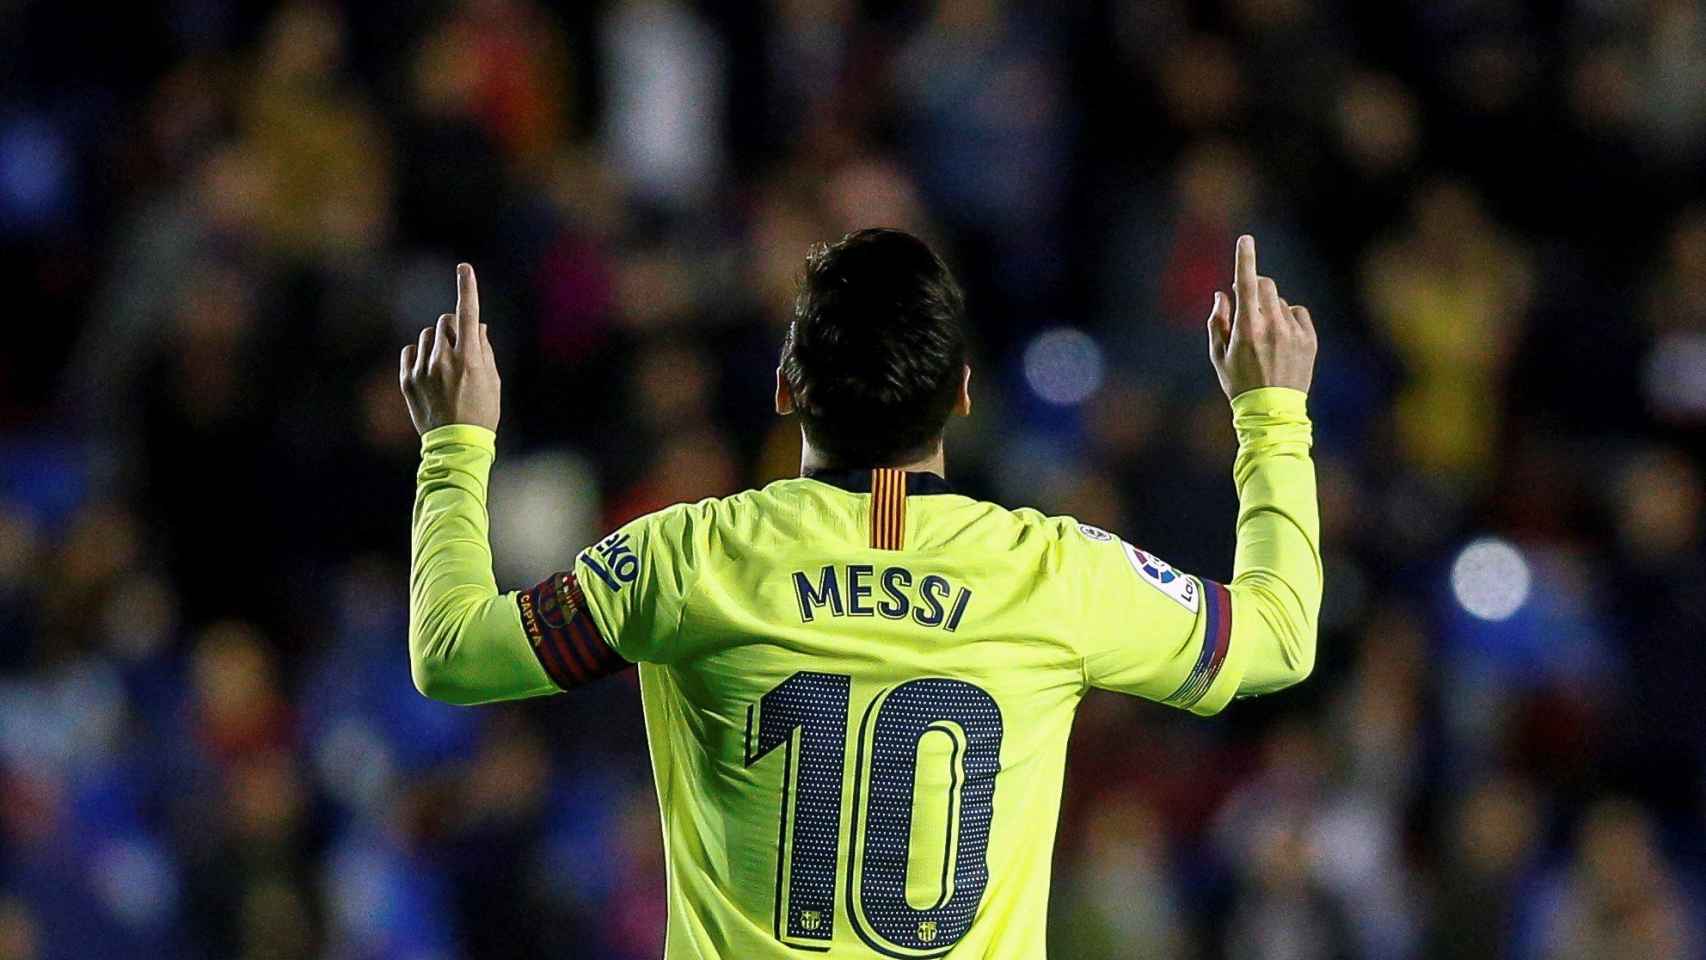 Messi y su celebración especial tras marcar gol / EFE